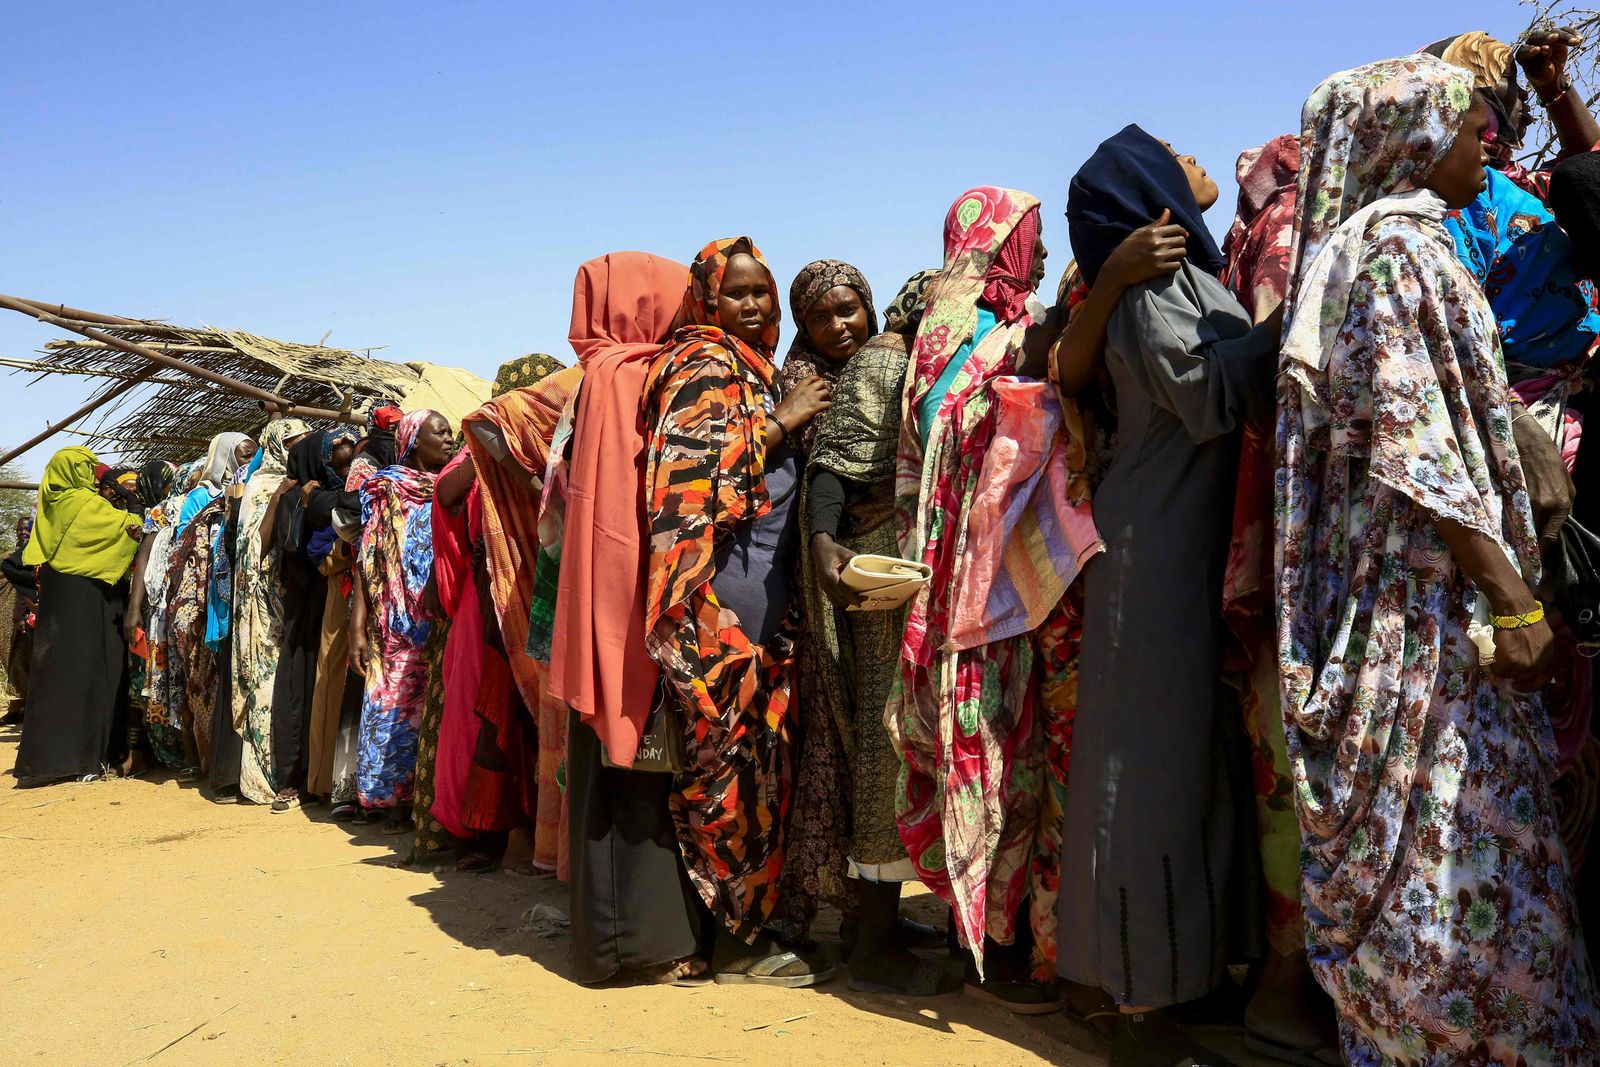 سودانيات نازحات ينتظرن وصول مساعدات برنامج الأغذية العالمي إلى مخيم عطاش للنازحين في ضواحي مدينة نيالا عاصمة جنوب دارفور - 1 فبراير 2021 - AFP